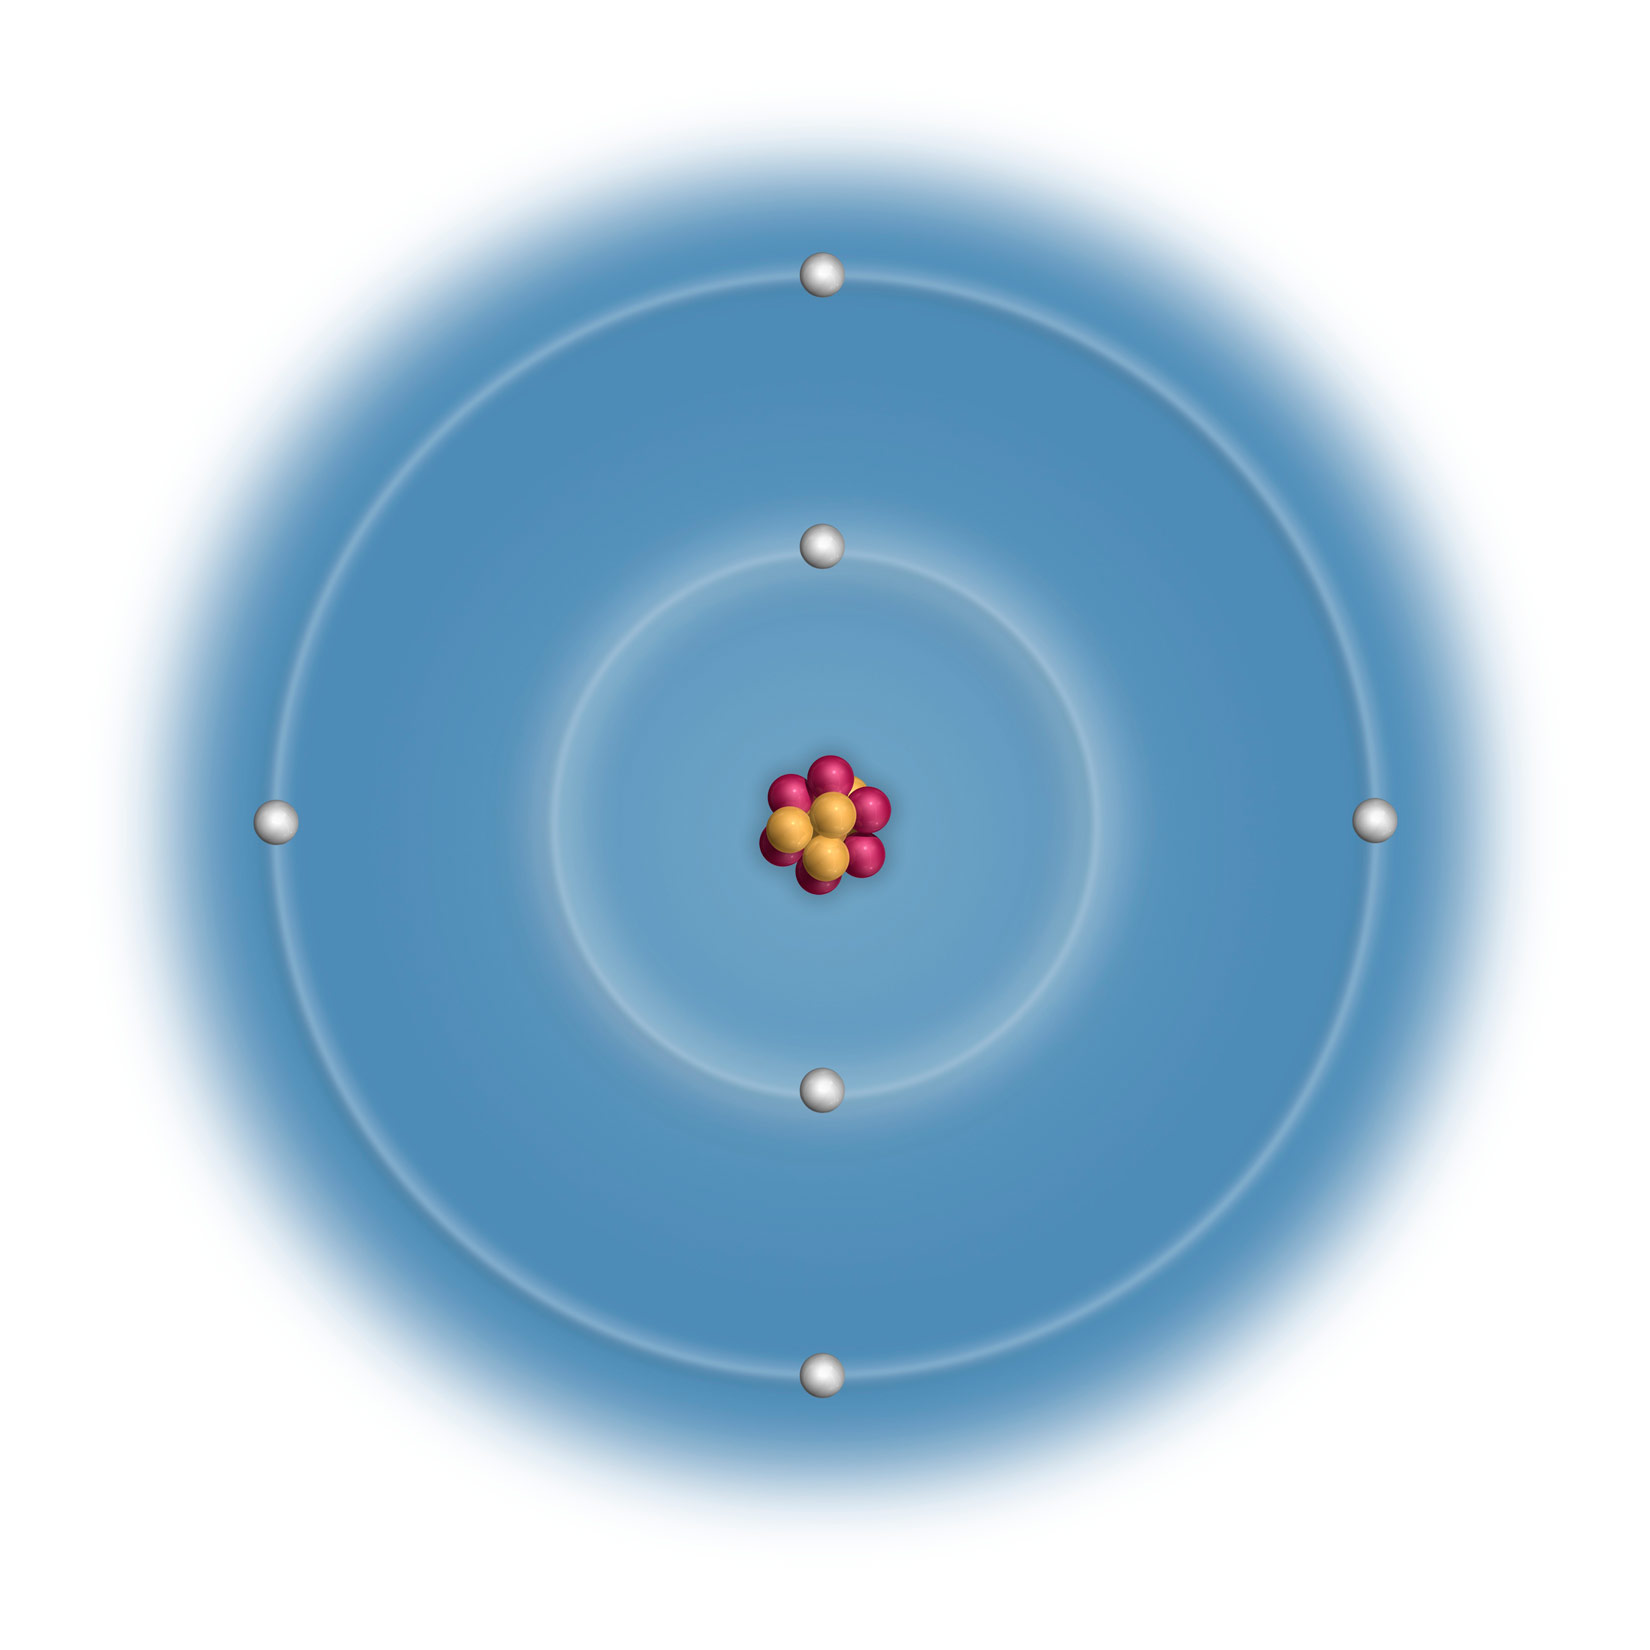 Na slici je prikazan model atoma ugljika u plavoj boji u obliku dva koncentrična kruga . U sredini je jezgra sa 4 protona i 4 neutrona koji su prikazani kao spojene crvene i narančaste kuglice. U prvom manjem elektronskom omotaču ( krugu) prikazane su dvije bijele kuglice koje prestavljaju elektrone. U drugom elketronskom omtaču (veći krug) prikazana su četiri bijele kuglice (elektrona).